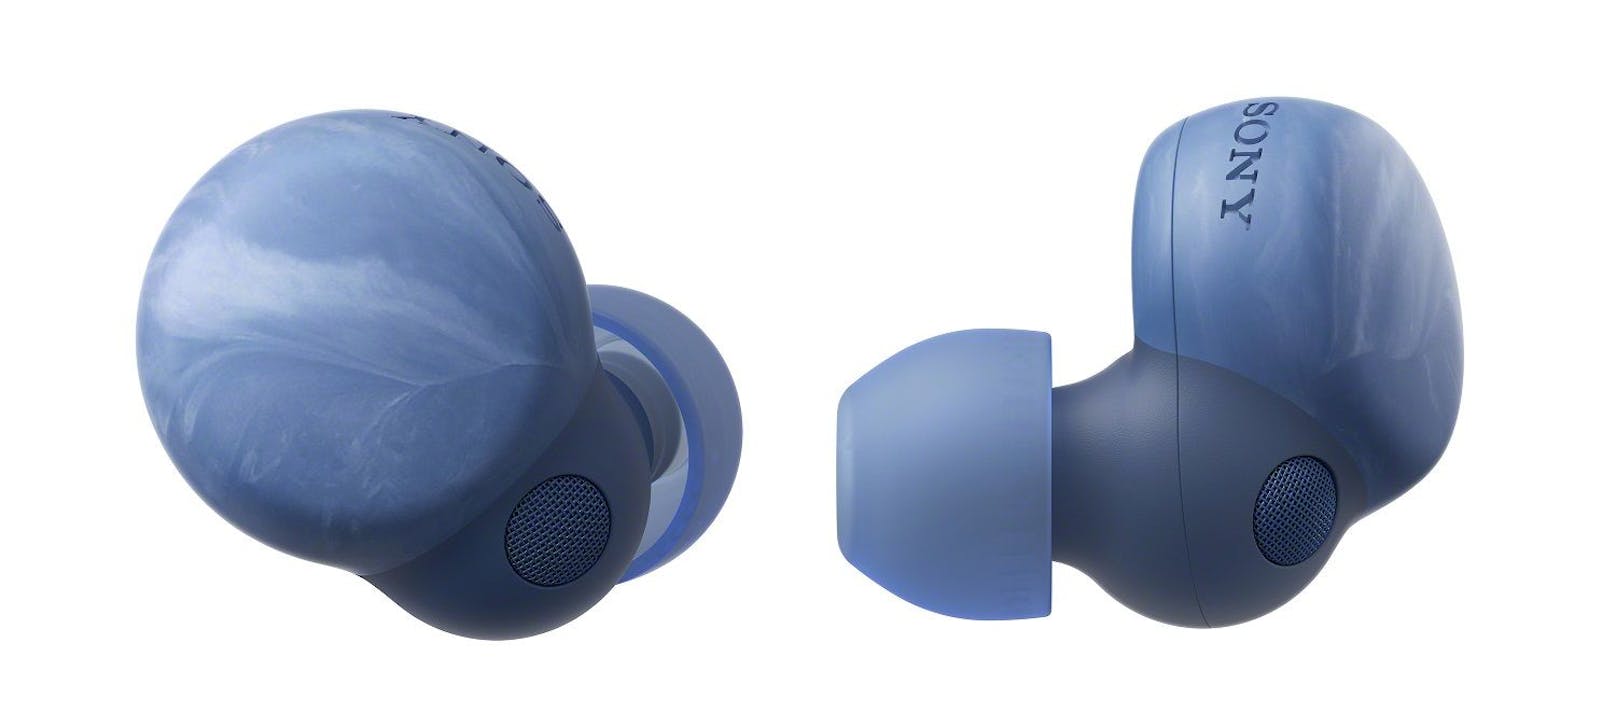 Sony präsentiert die LinkBuds S "Earth Blue" mit einem einzigartigen Design, hergestellt aus recycelten Plastikwasserflaschen.